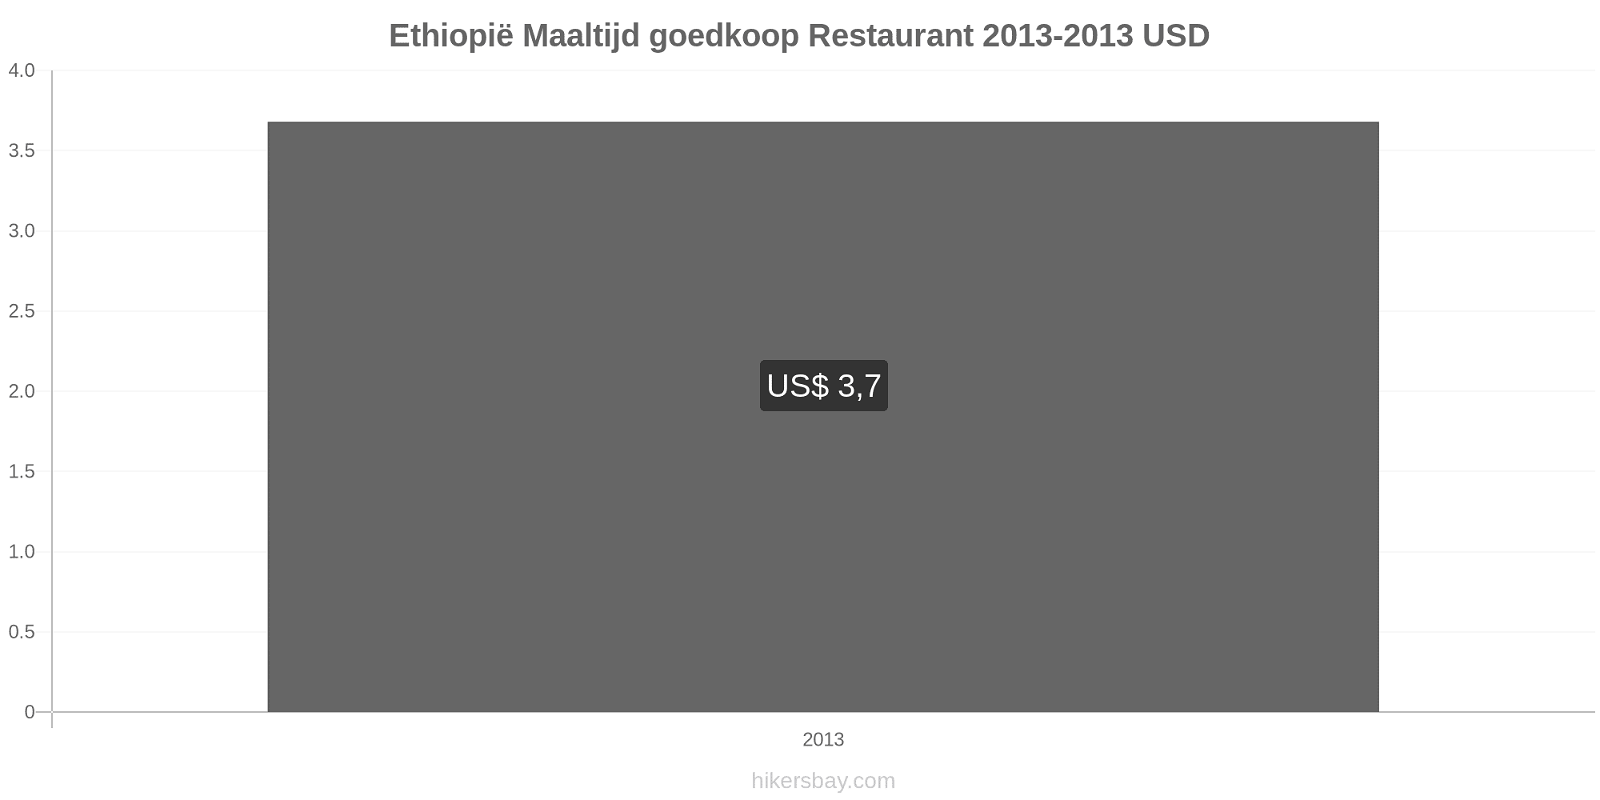 Ethiopië prijswijzigingen Maaltijd in een goedkoop restaurant hikersbay.com